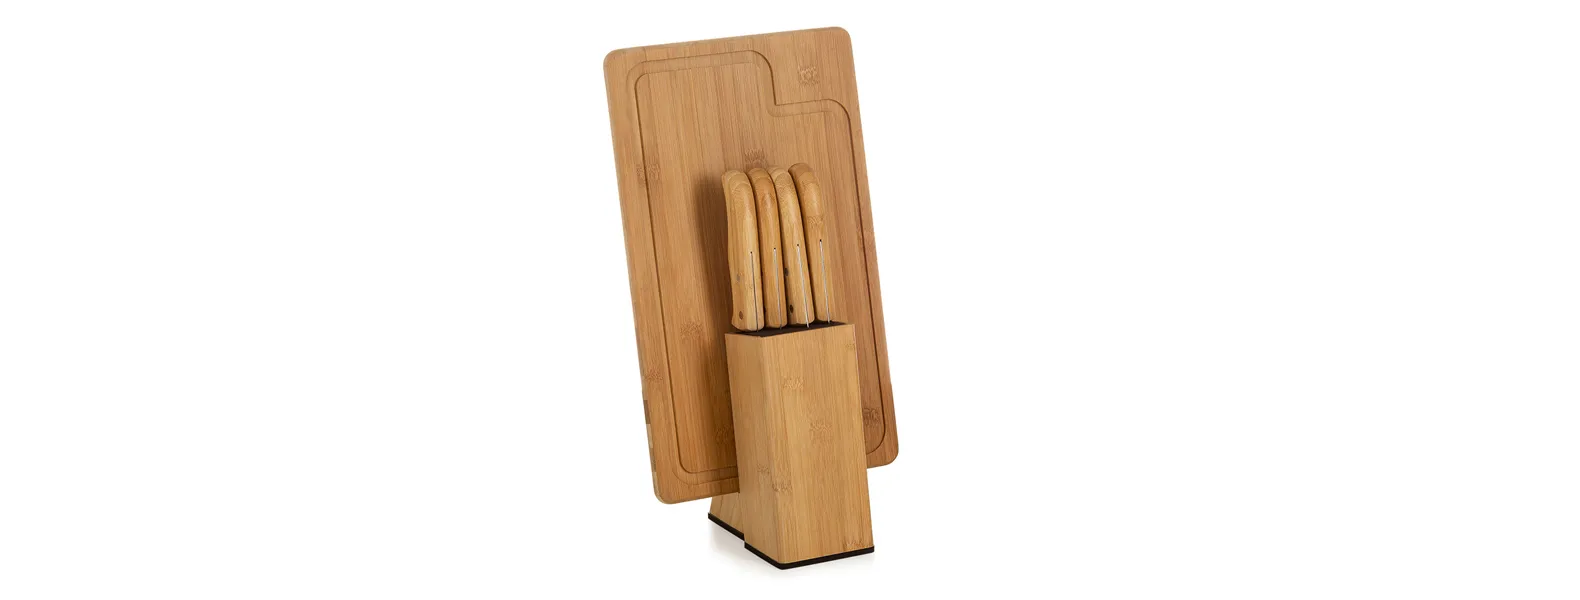 Conjunto para cozinha em bambu/inox; Acompanha tábua e cepo em bambu; Faca 7, faca para pão 7, faca santoku e faca de filetiar 5.